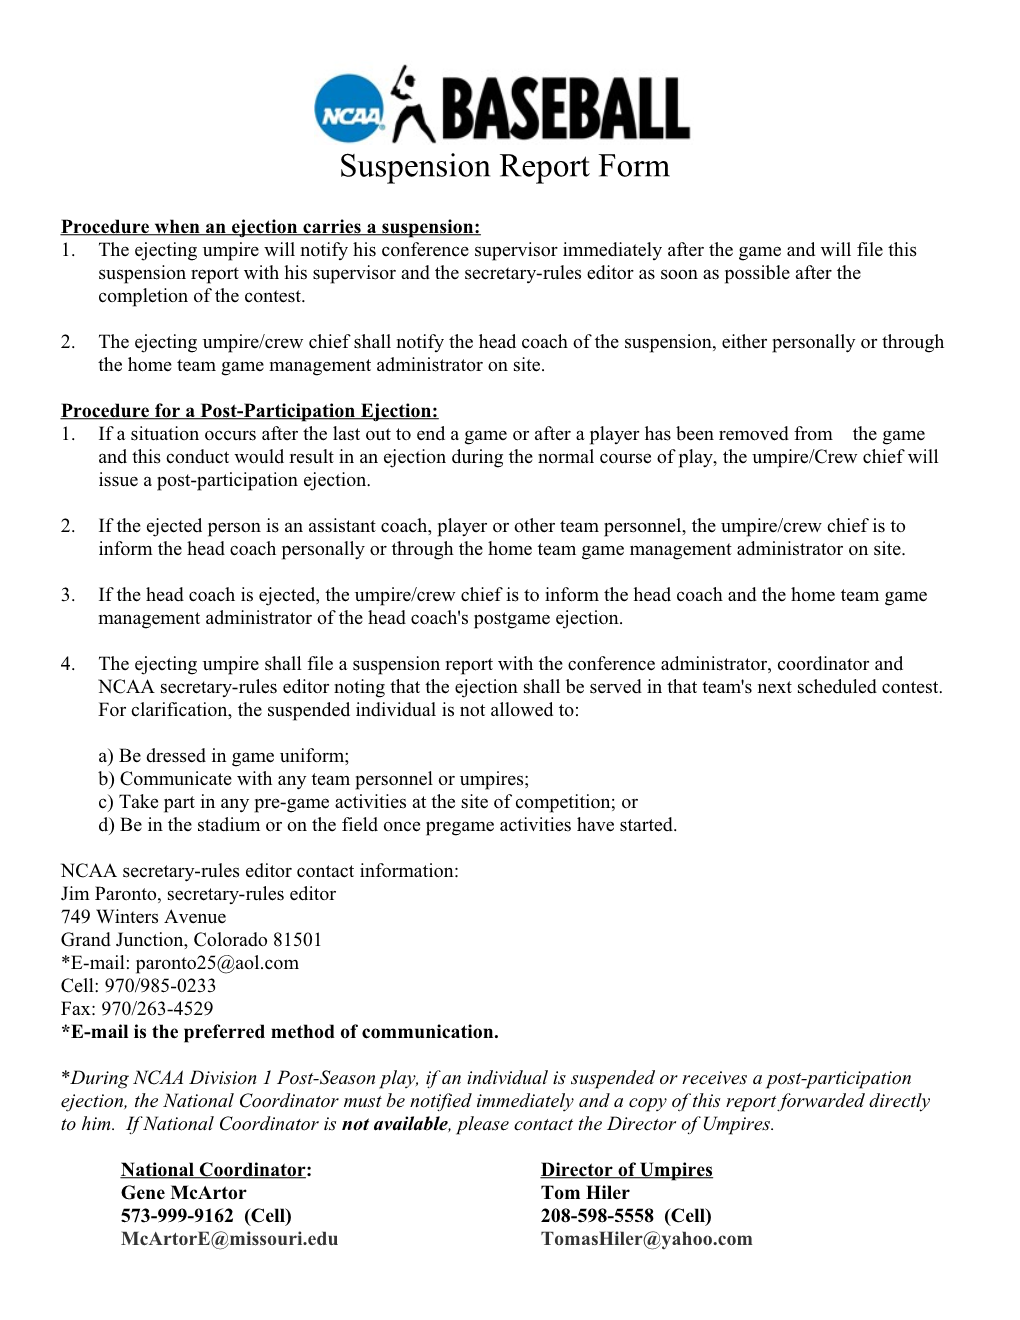 NCAA Suspension Report Form